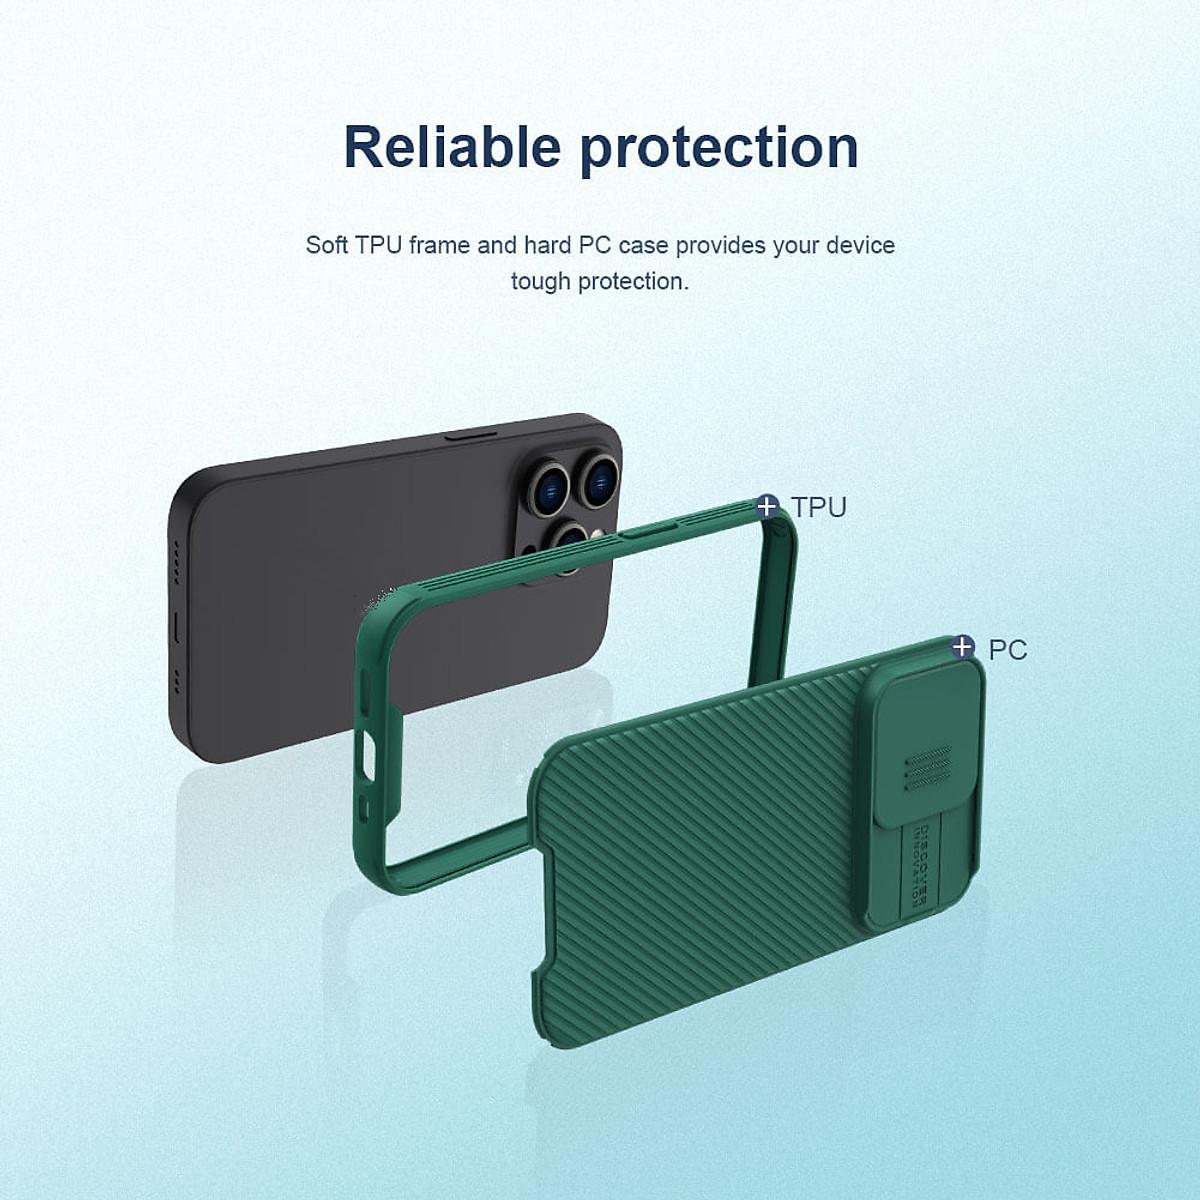 Ốp lưng chống sốc cho Iphone 14 Pro , 14 Pro Max bảo vệ Camera hiệu Nillkin Camshield Pro chống sốc cực tốt, chất liệu cao cấp, có khung & nắp đậy bảo vệ Camera - Hàng chính hãng